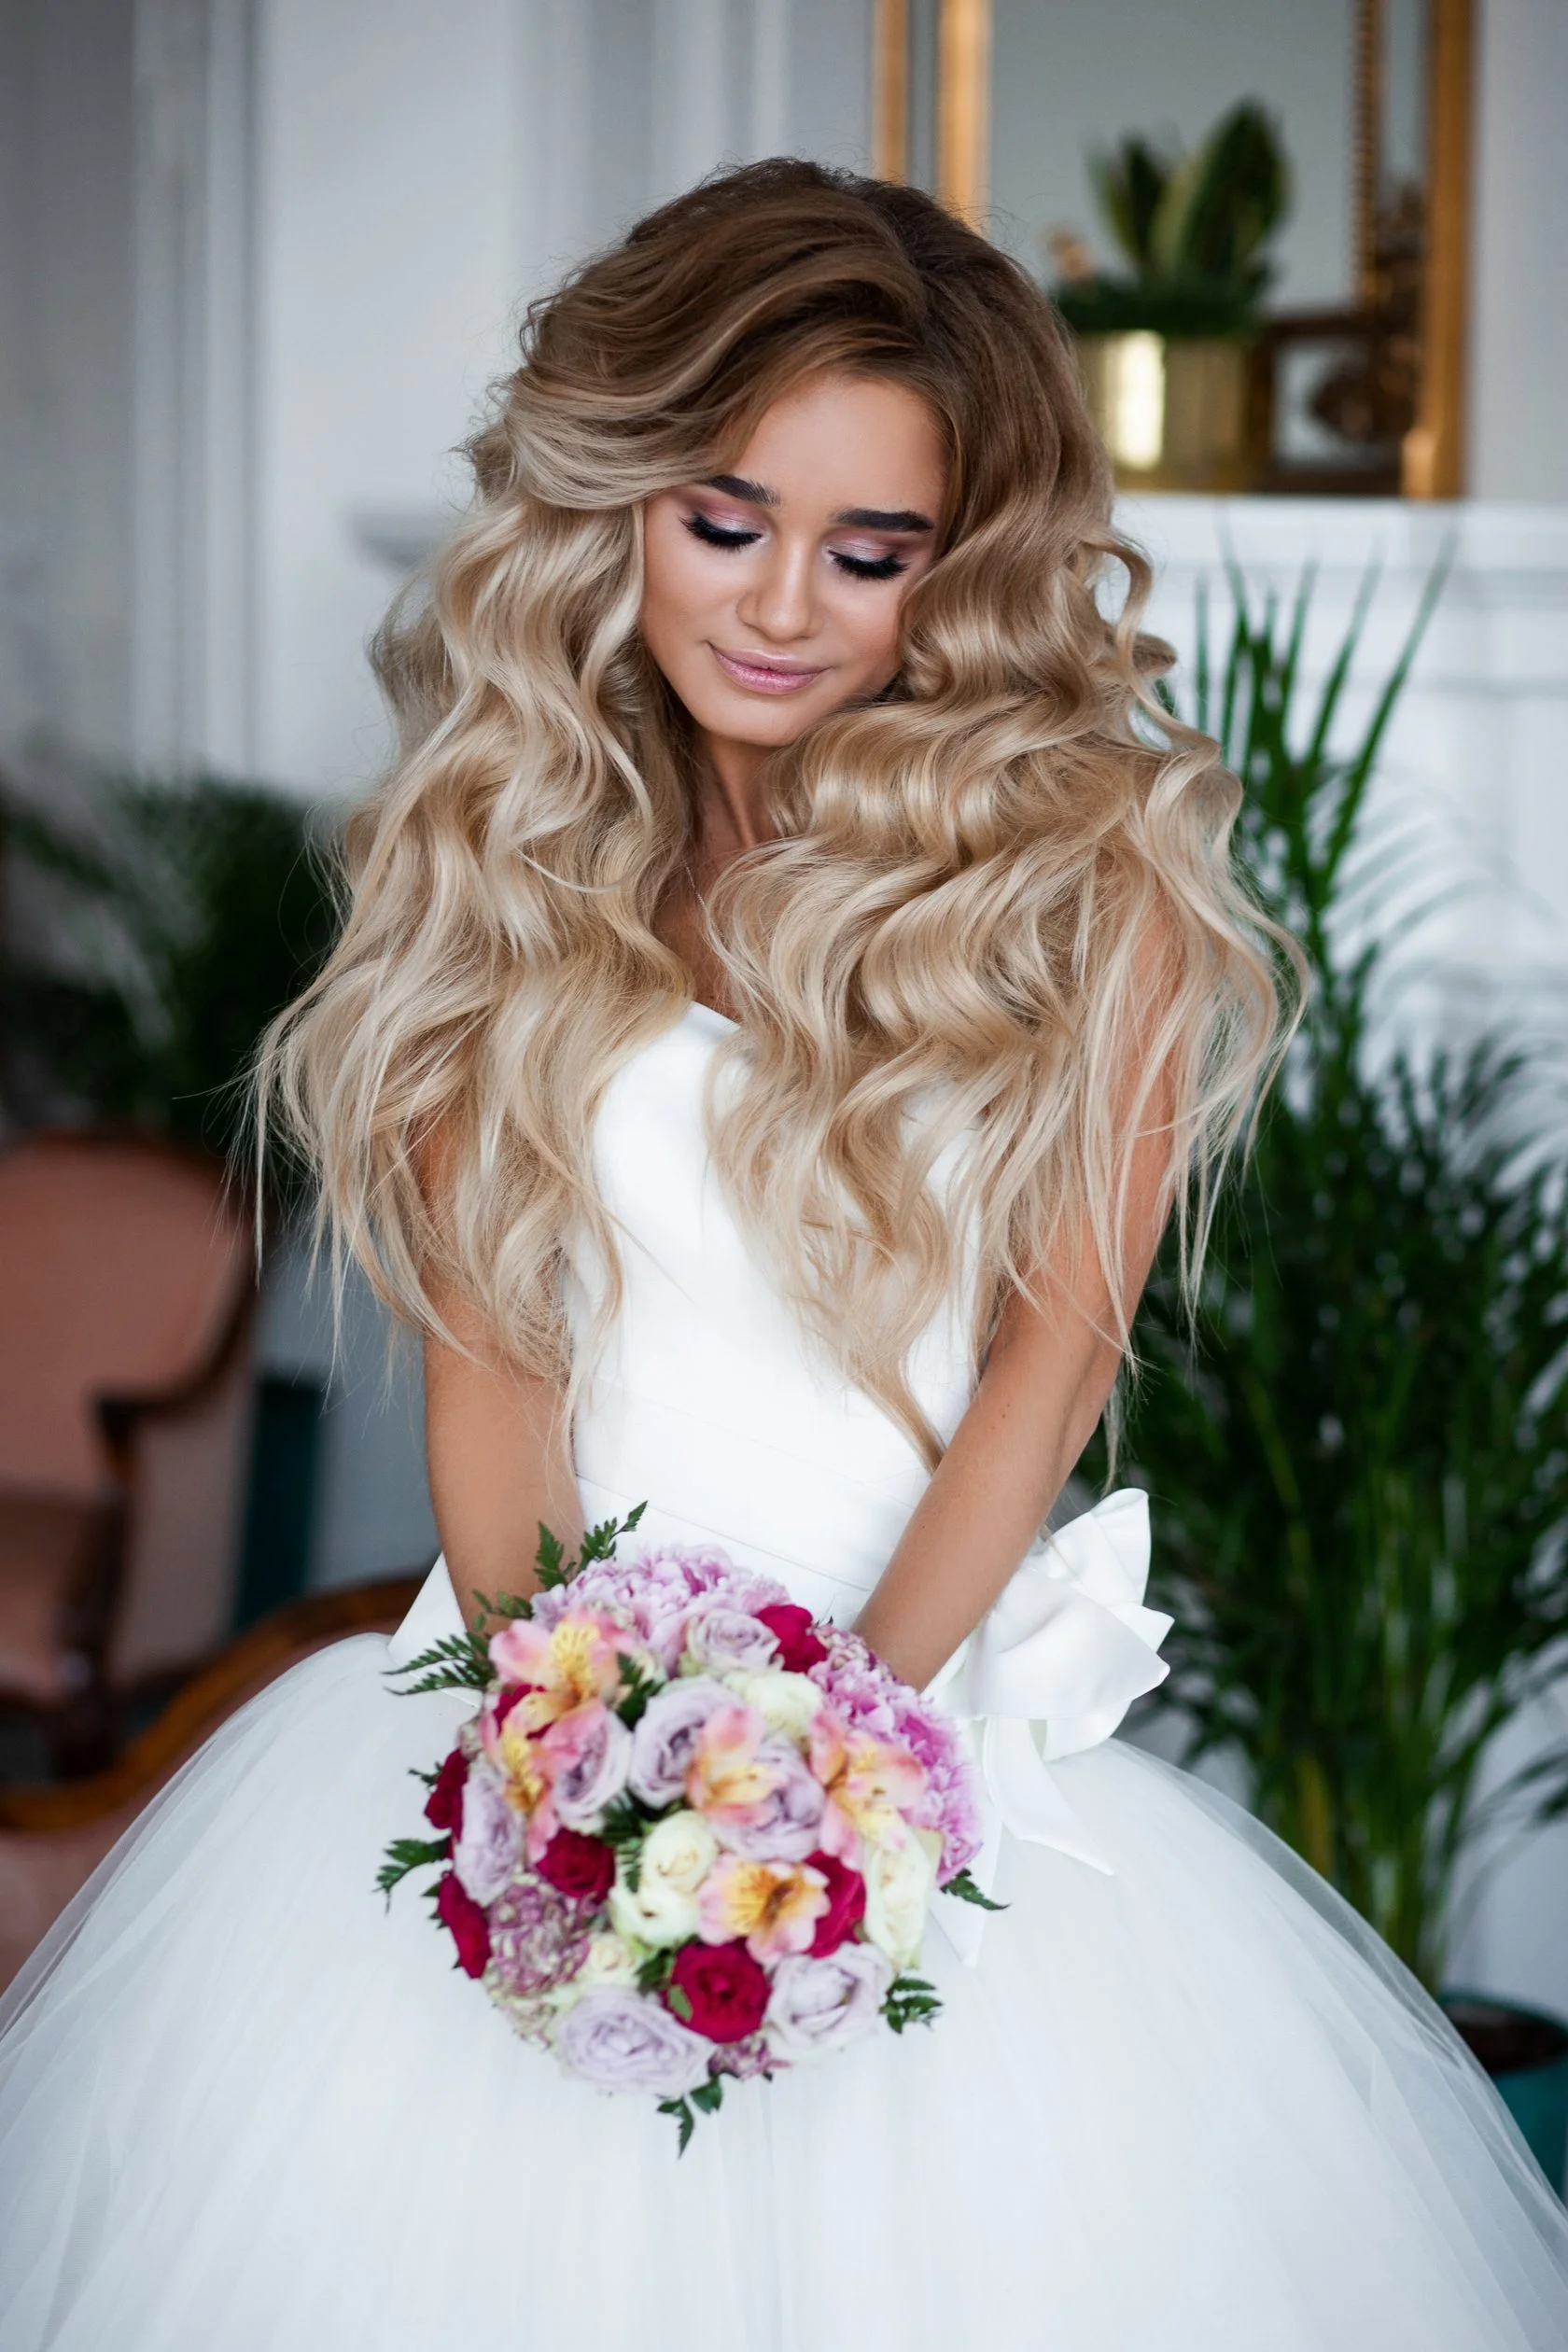 Весільні зачіски 2019: фото кращих варіантів укладок для нареченої - фото 438888